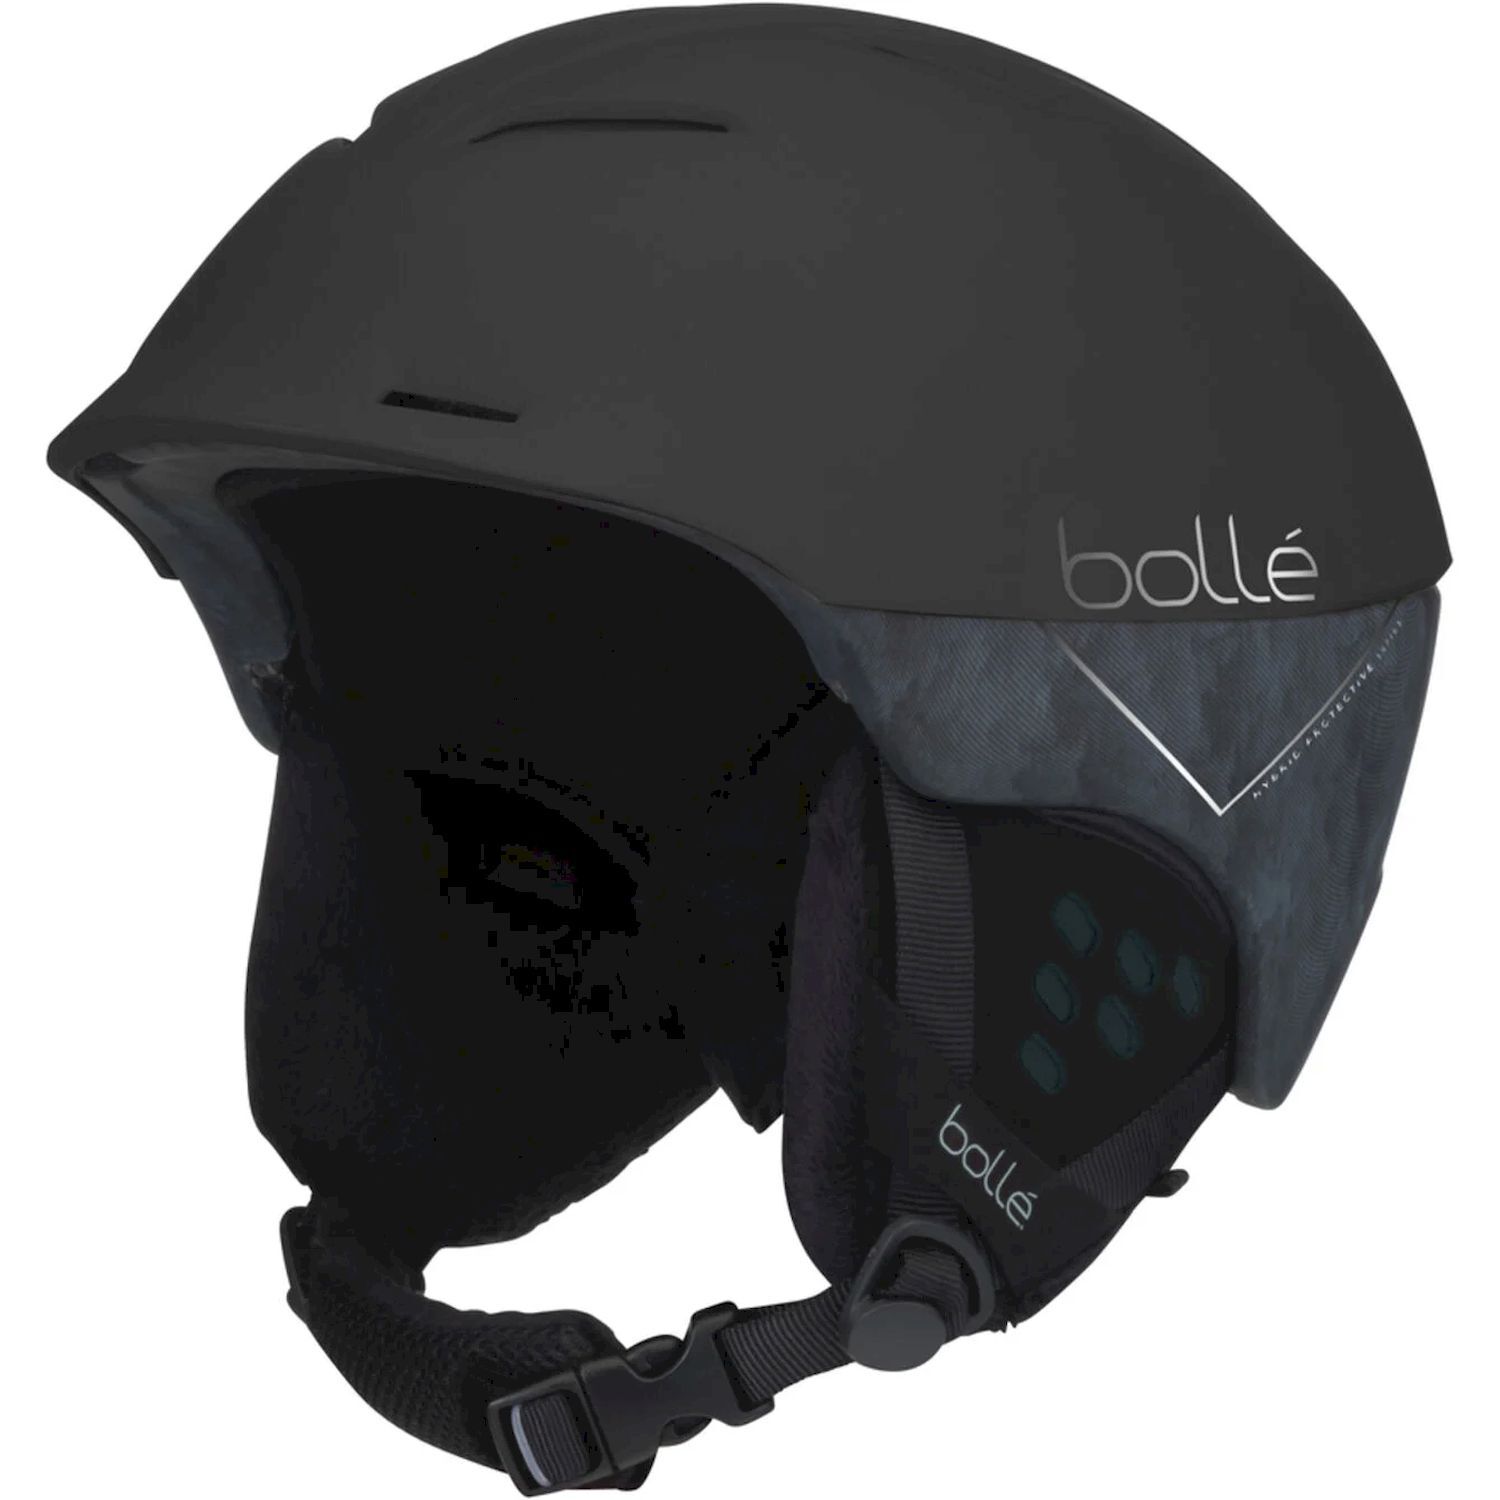 Bollé Synergy - Ski helmet